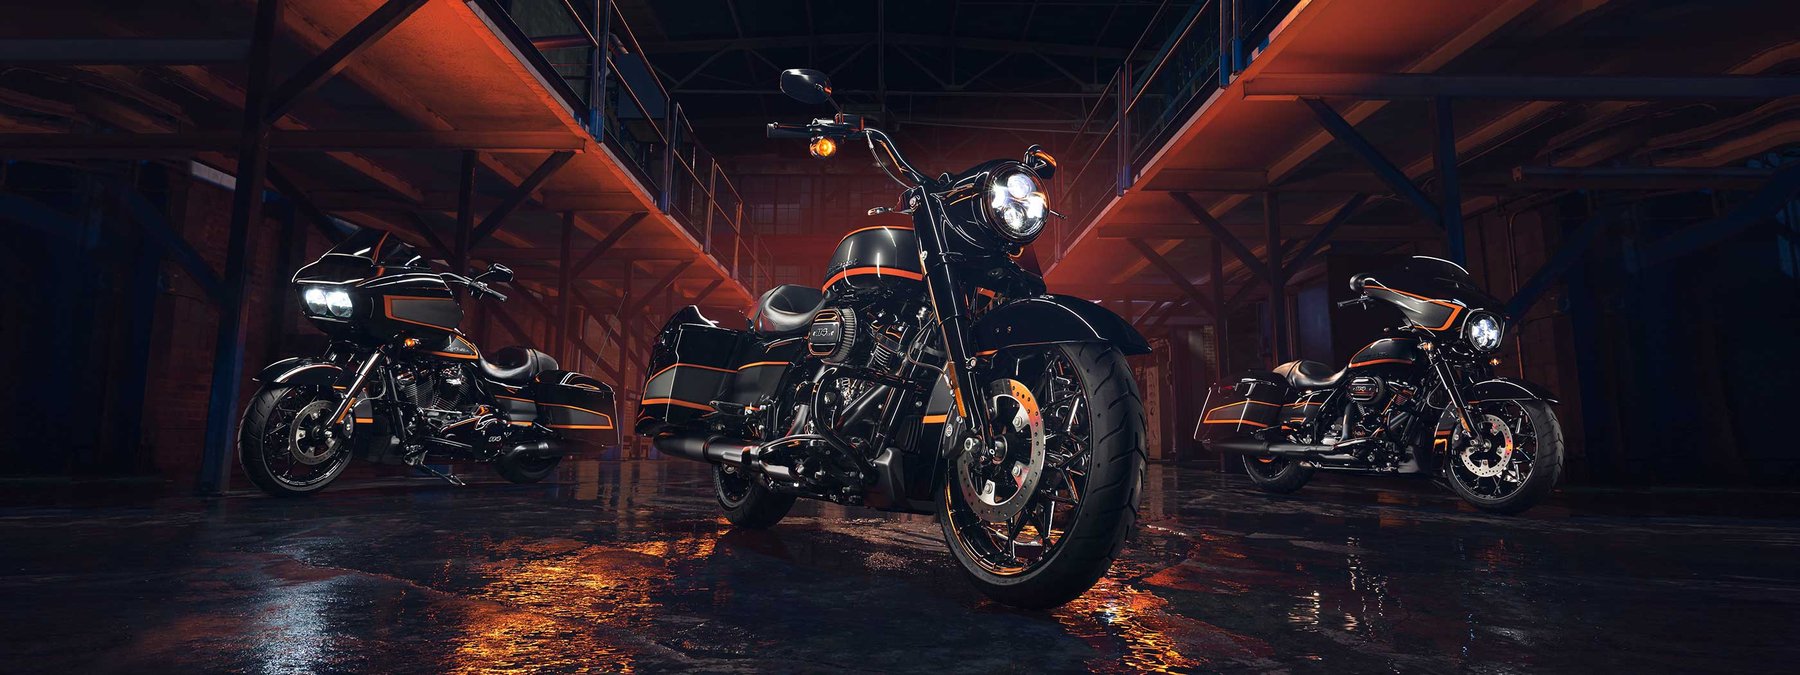 Cat kustom Apex tampil di motor Harley-Davidson